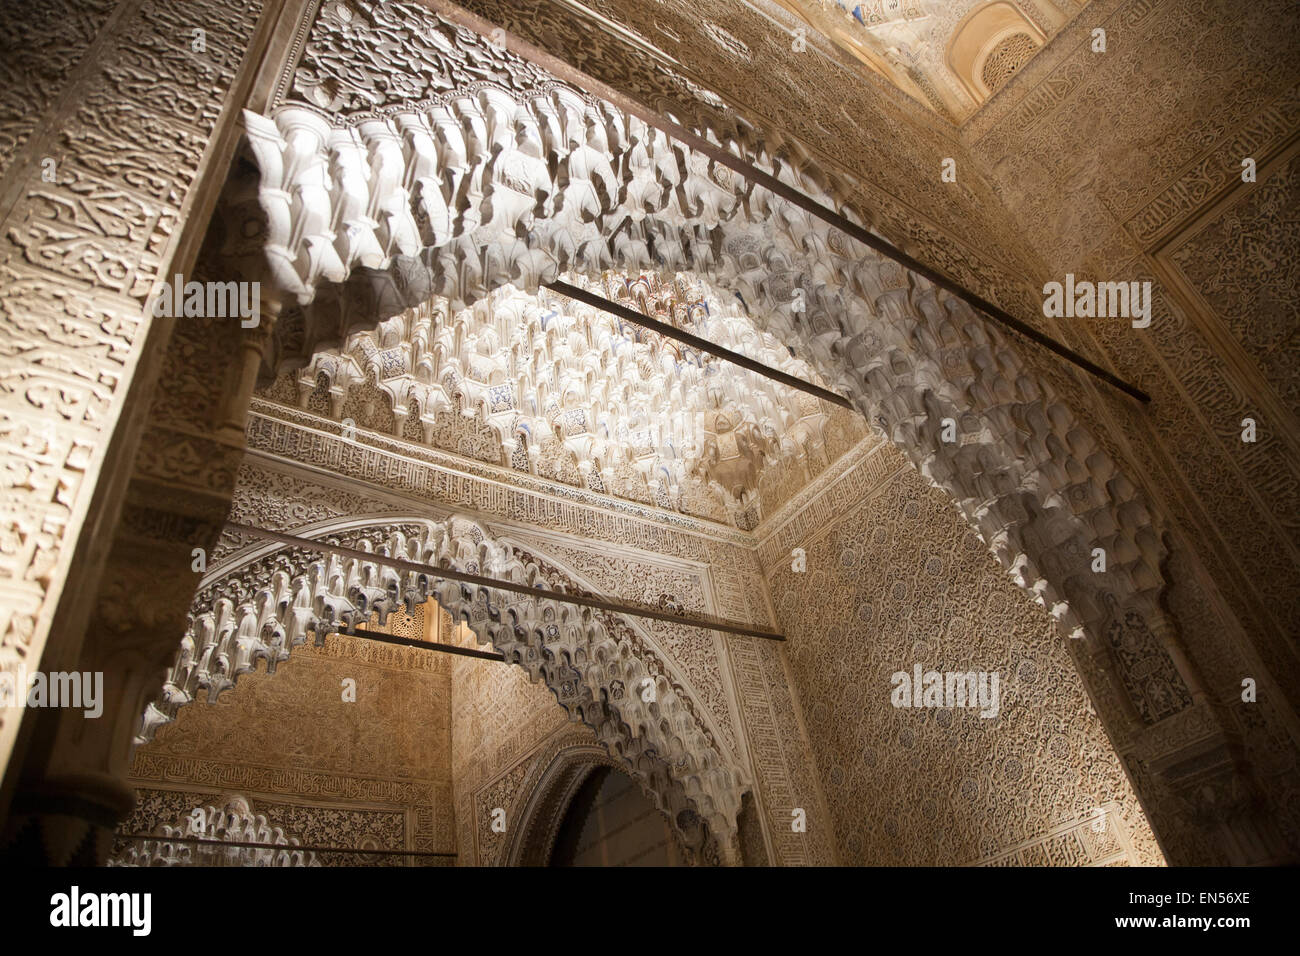 Vue nocturne illuminé richement décorées de pierres islamique Alhmabra plafond palais, Granada, Espagne Banque D'Images